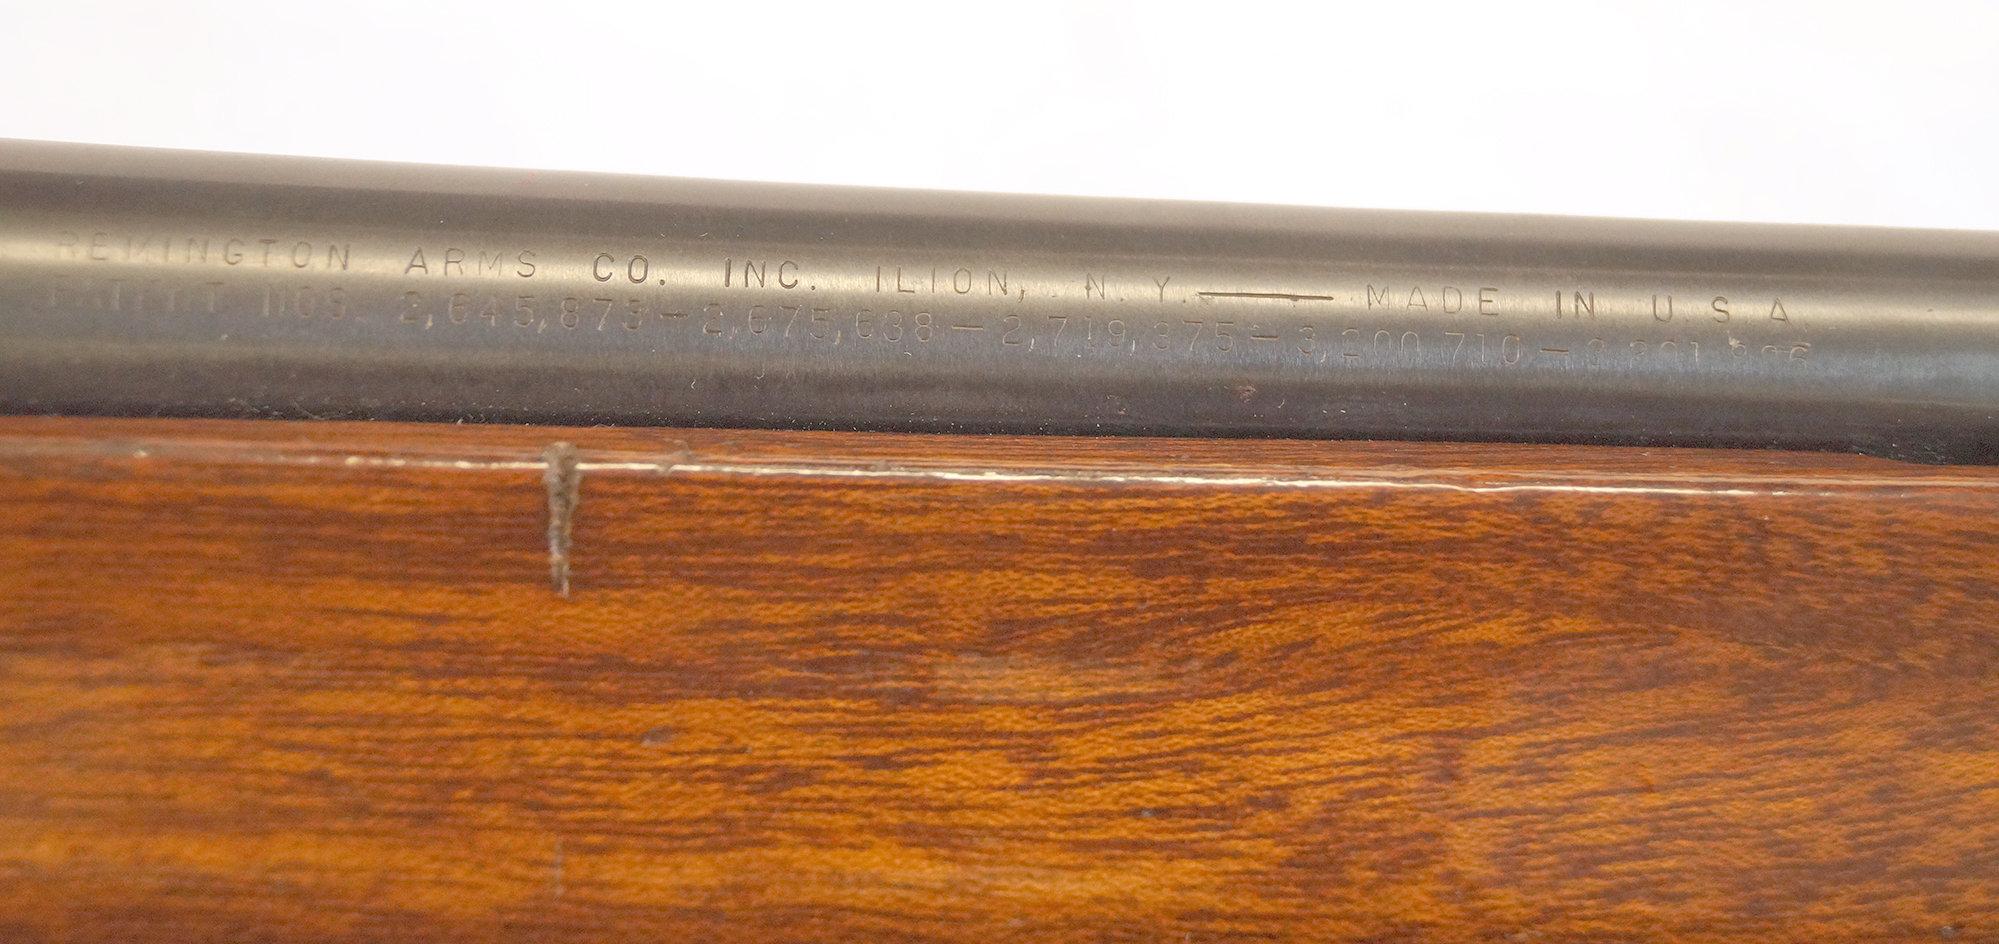 Remington Shotgun Model 1100LW, 20 Gauge Semi-Auto